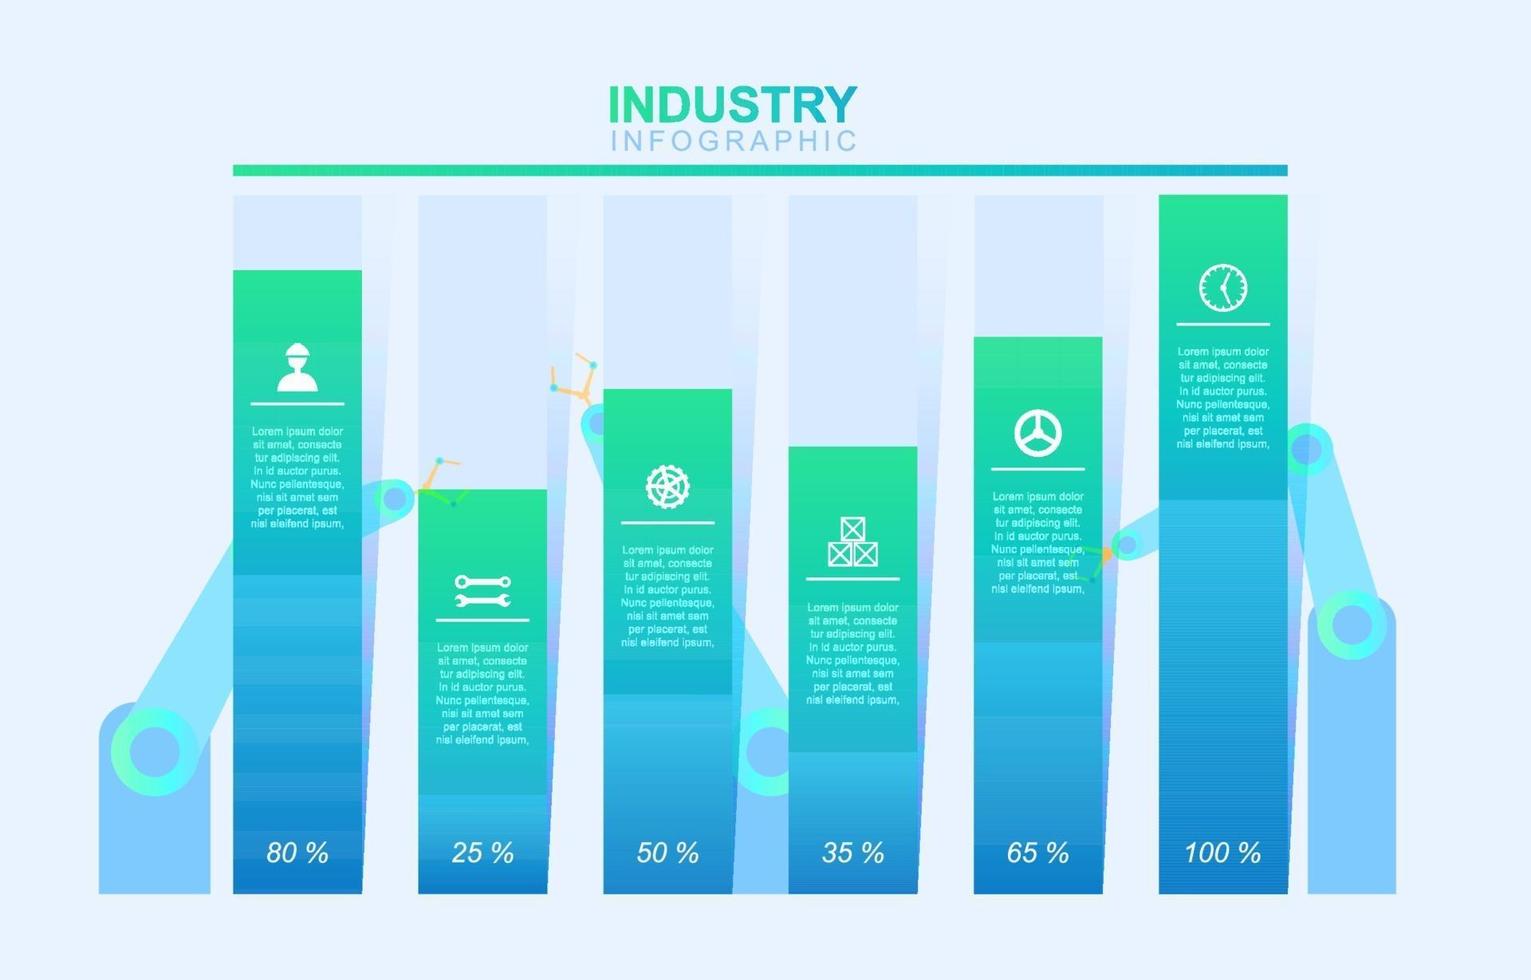 grafico a barre di affari industriali infografica vettore